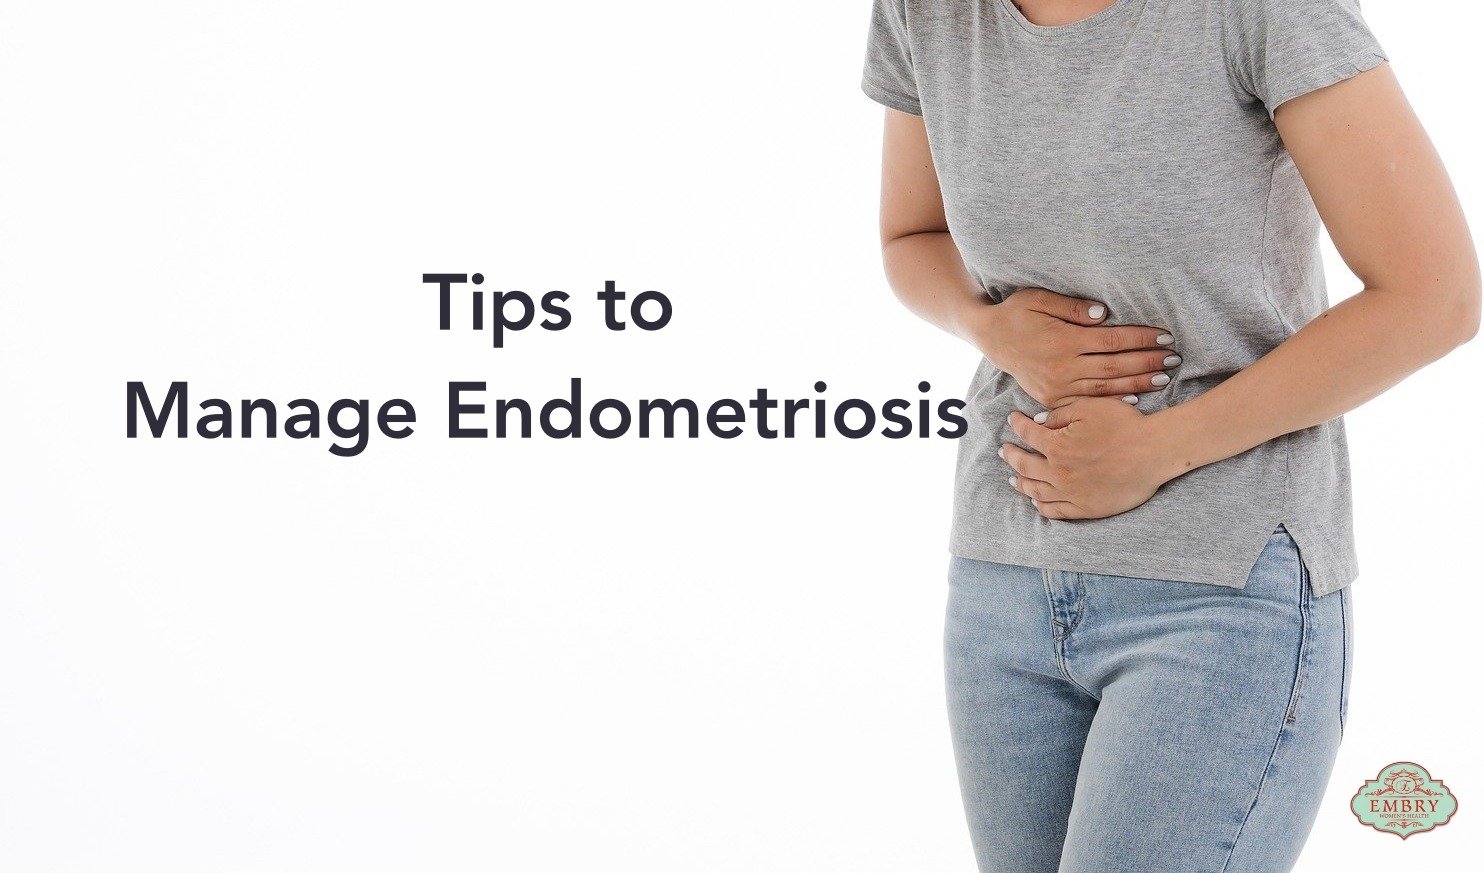 Tips to Manage Endometriosis